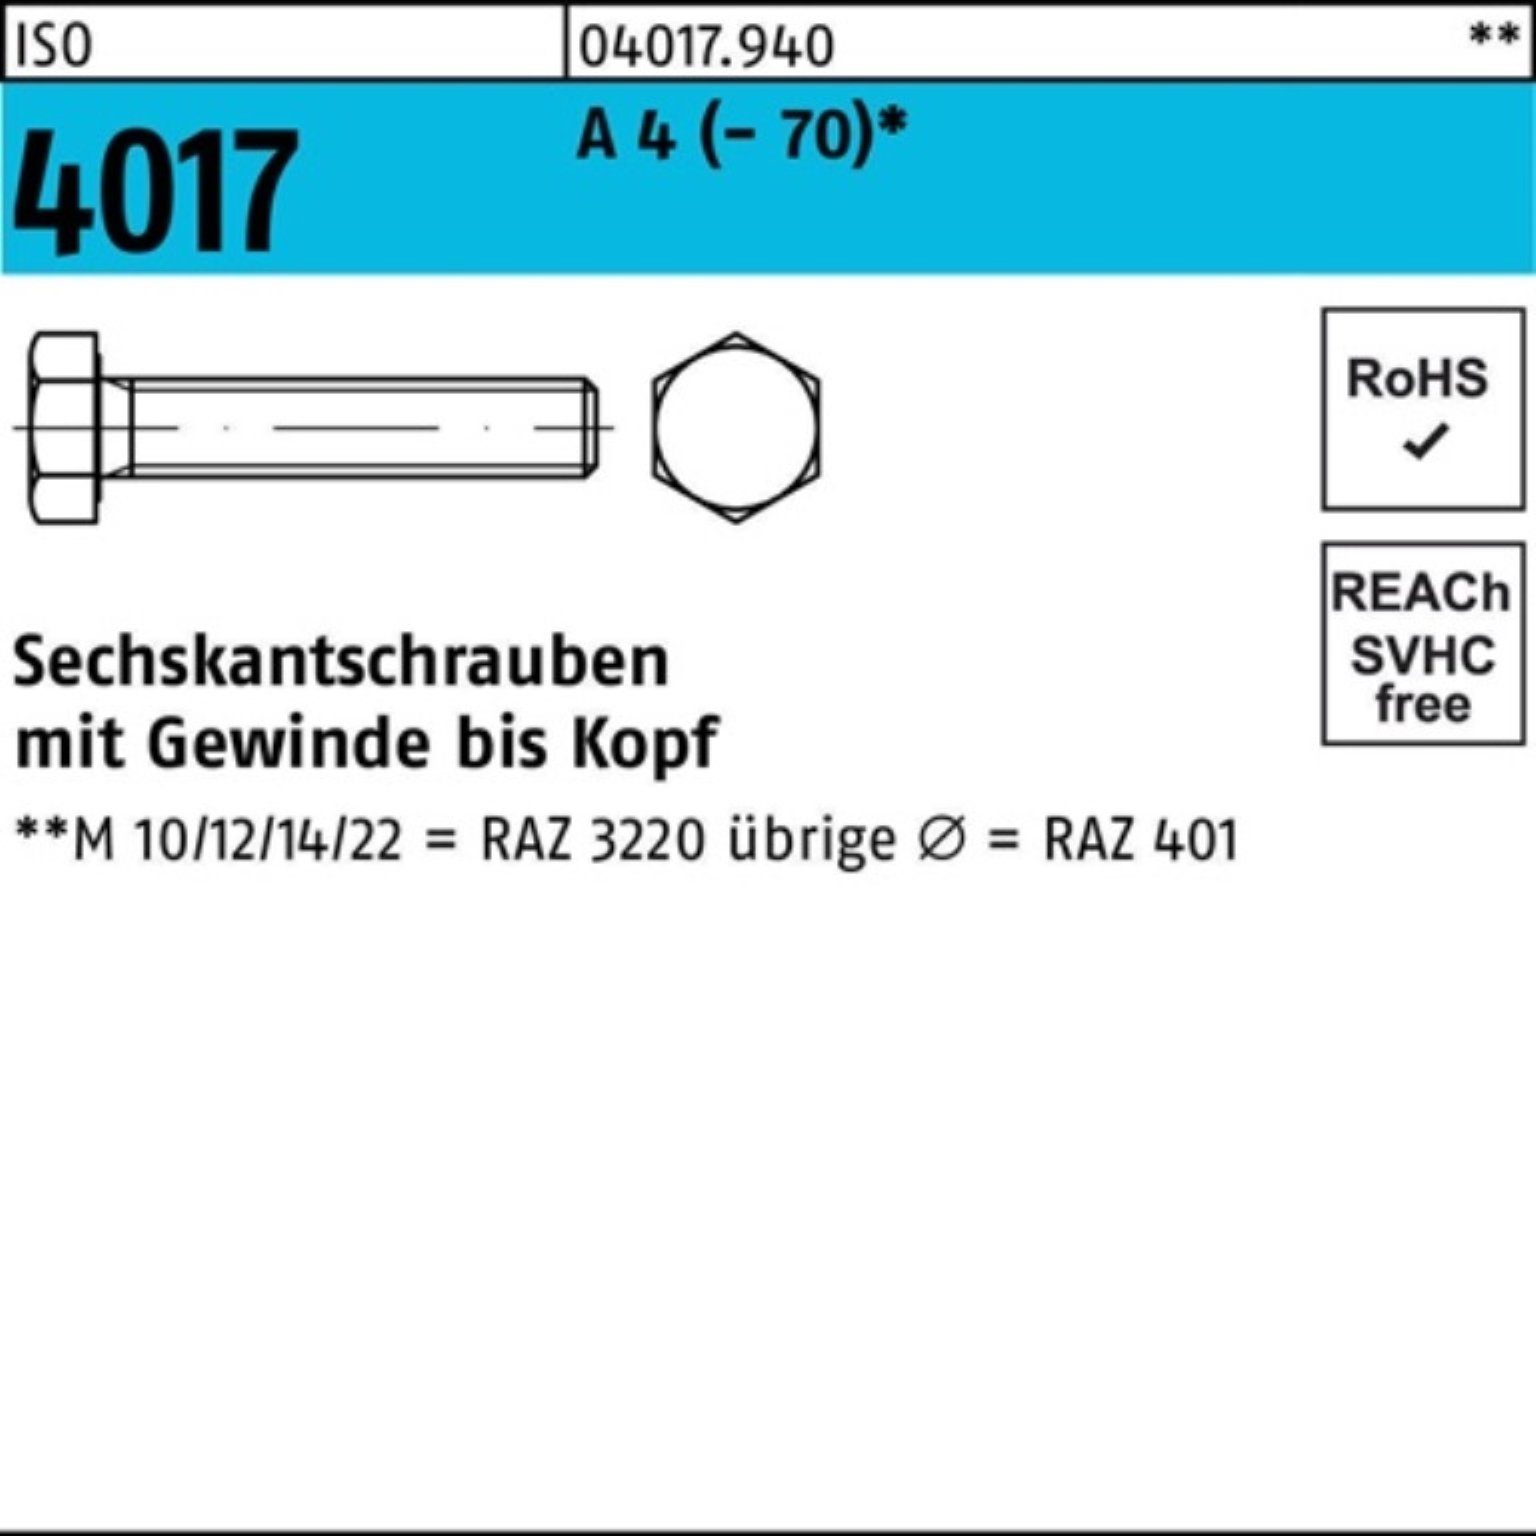 Bufab Sechskantschraube 100er Pack Sechskantschraube A Stück (70) 100 1 M27x VG 4017 ISO 4